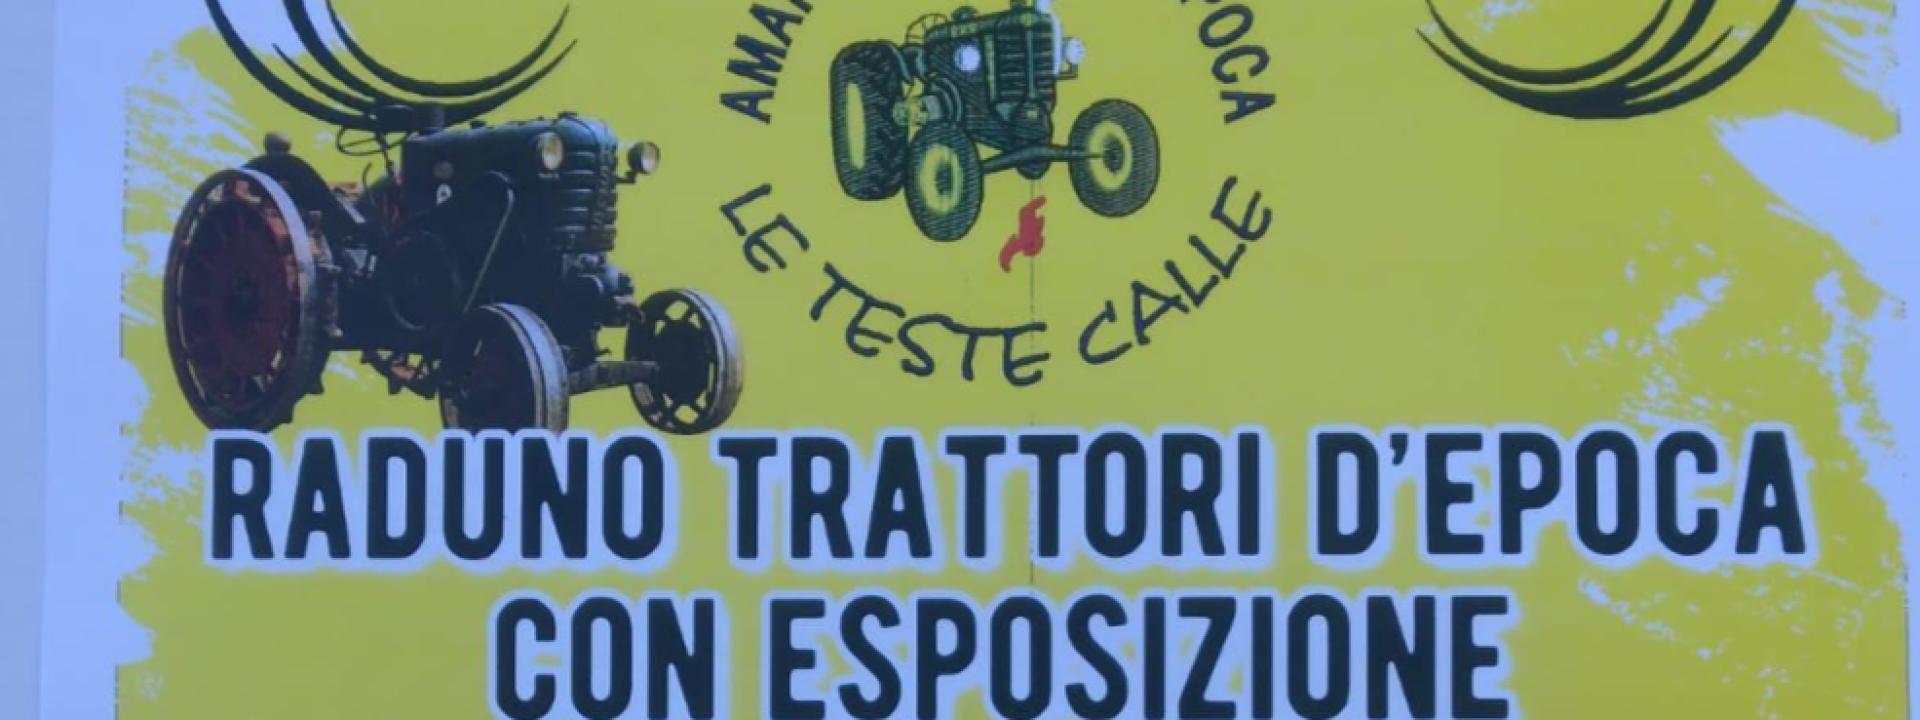 Marche - A San Ginesio torna il Raduno trattori d'epoca